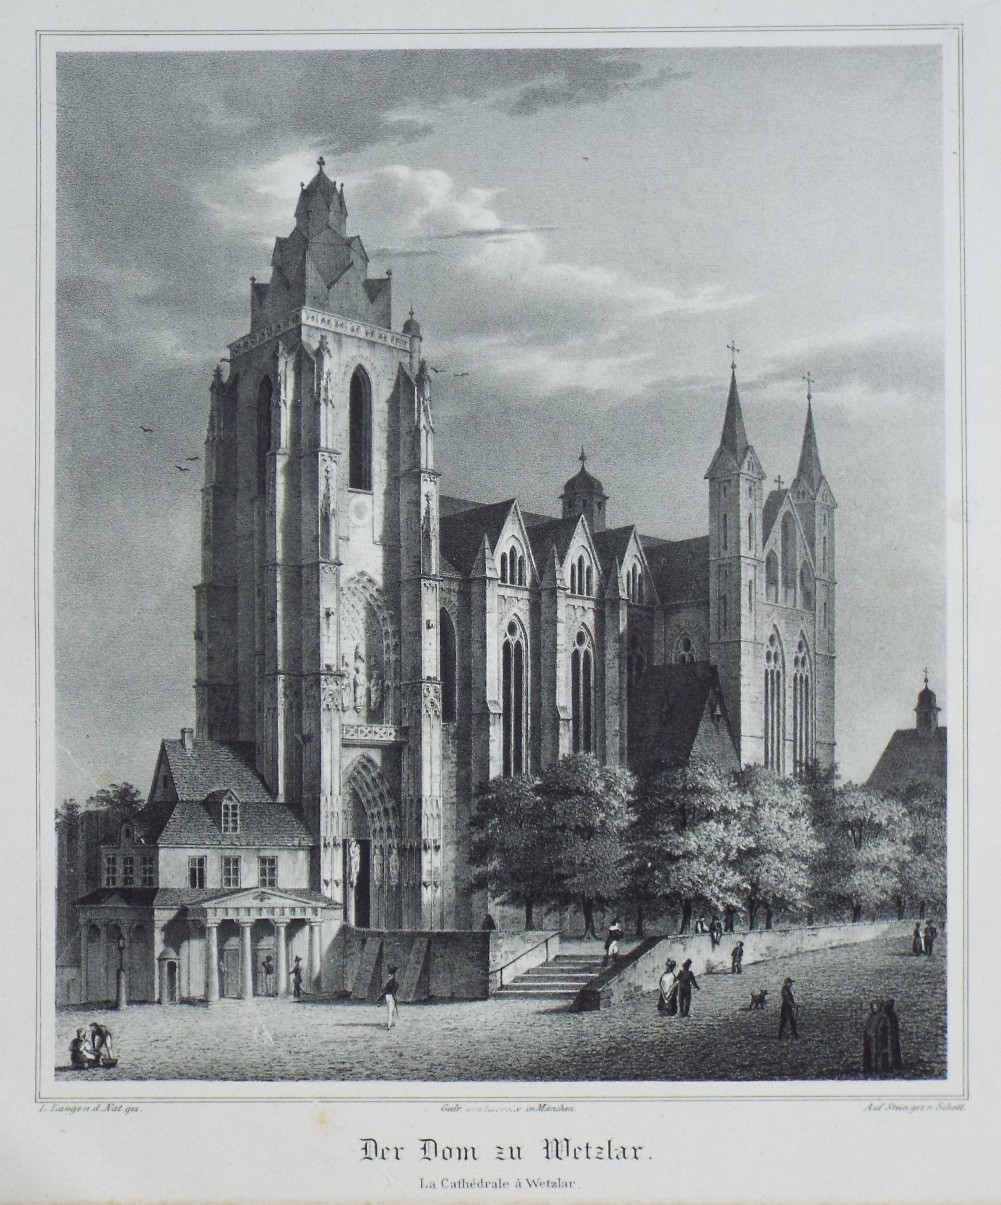 Lithograph - Der Dom zu Wetzlar.
La Cathedrale a Wetzlar. - 